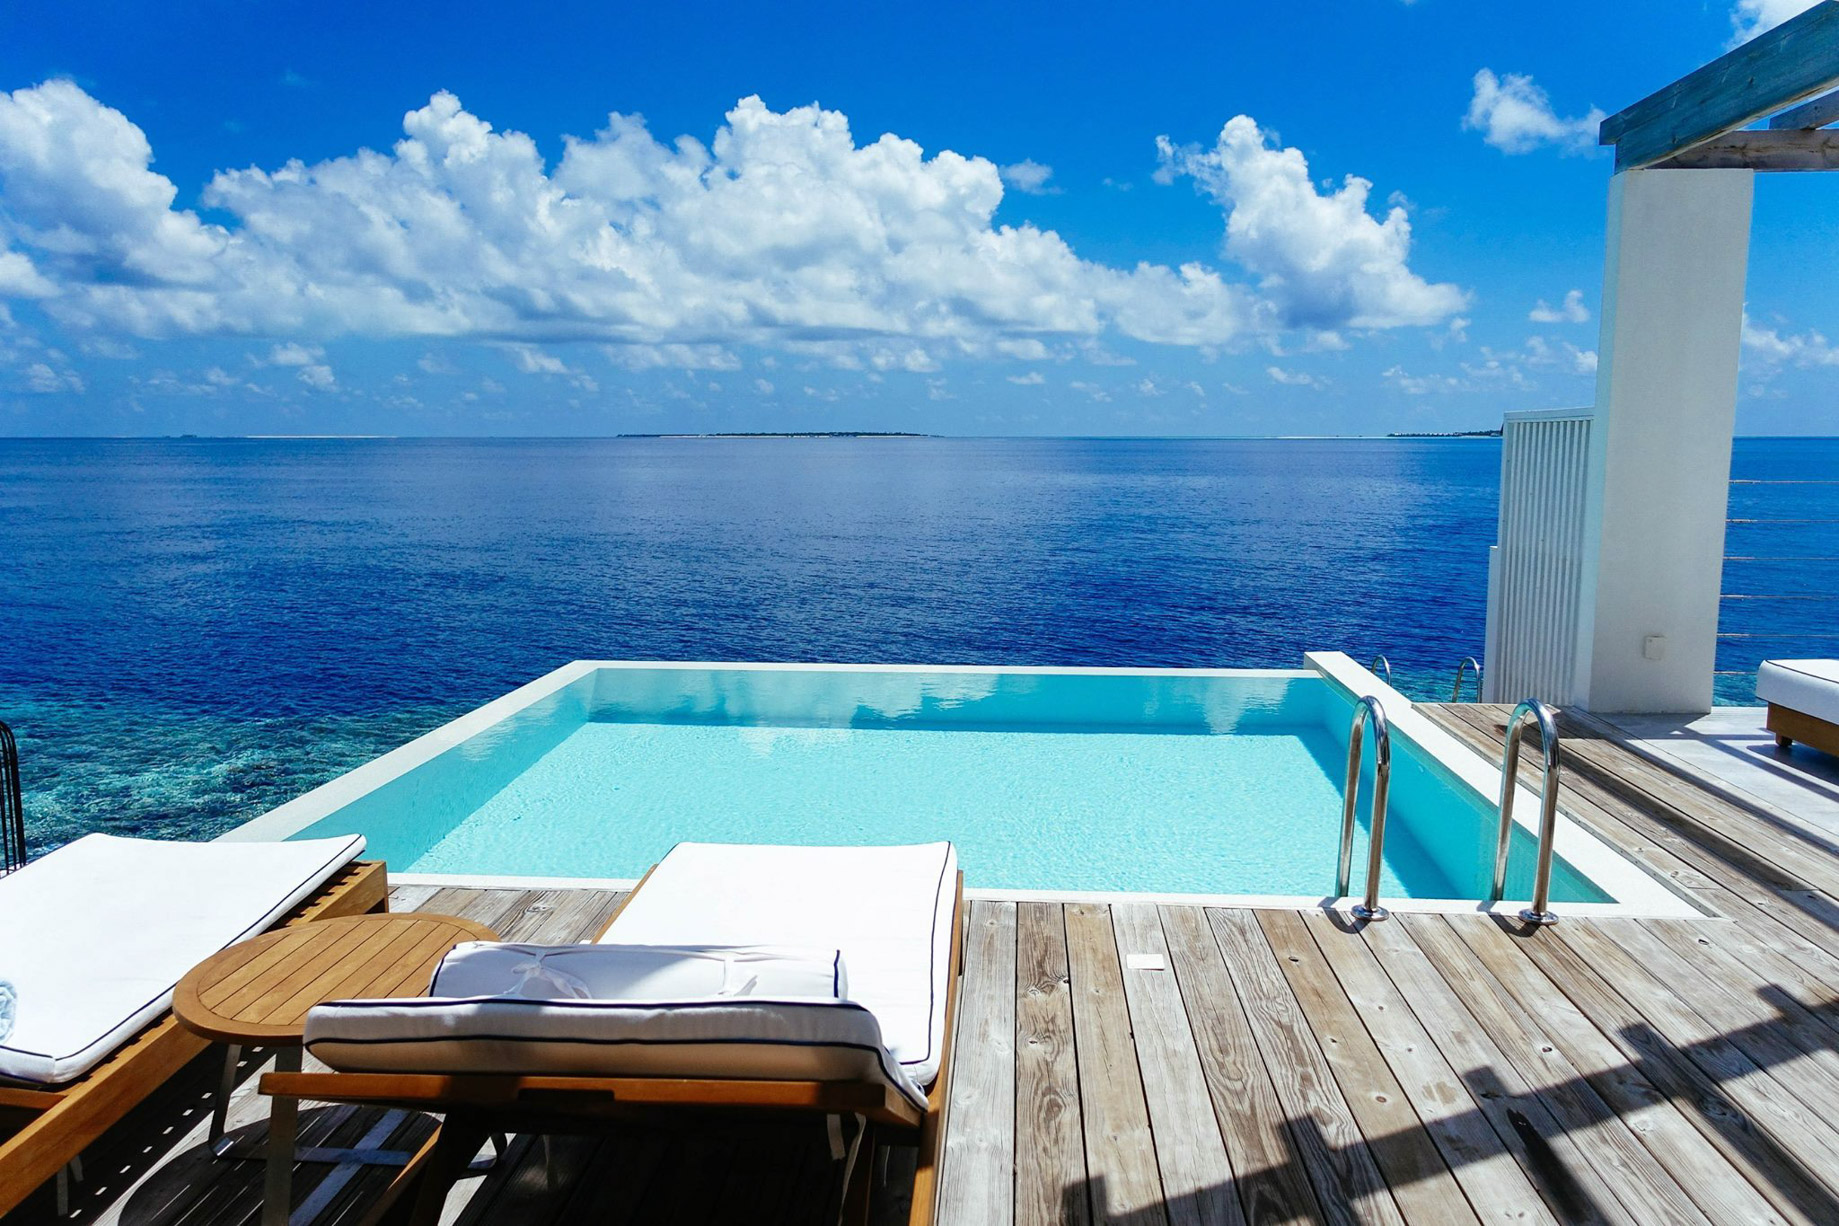 Amilla Fushi Resort and Residences - Baa Atoll, Maldives - Sunset Water Villa Pool Deck